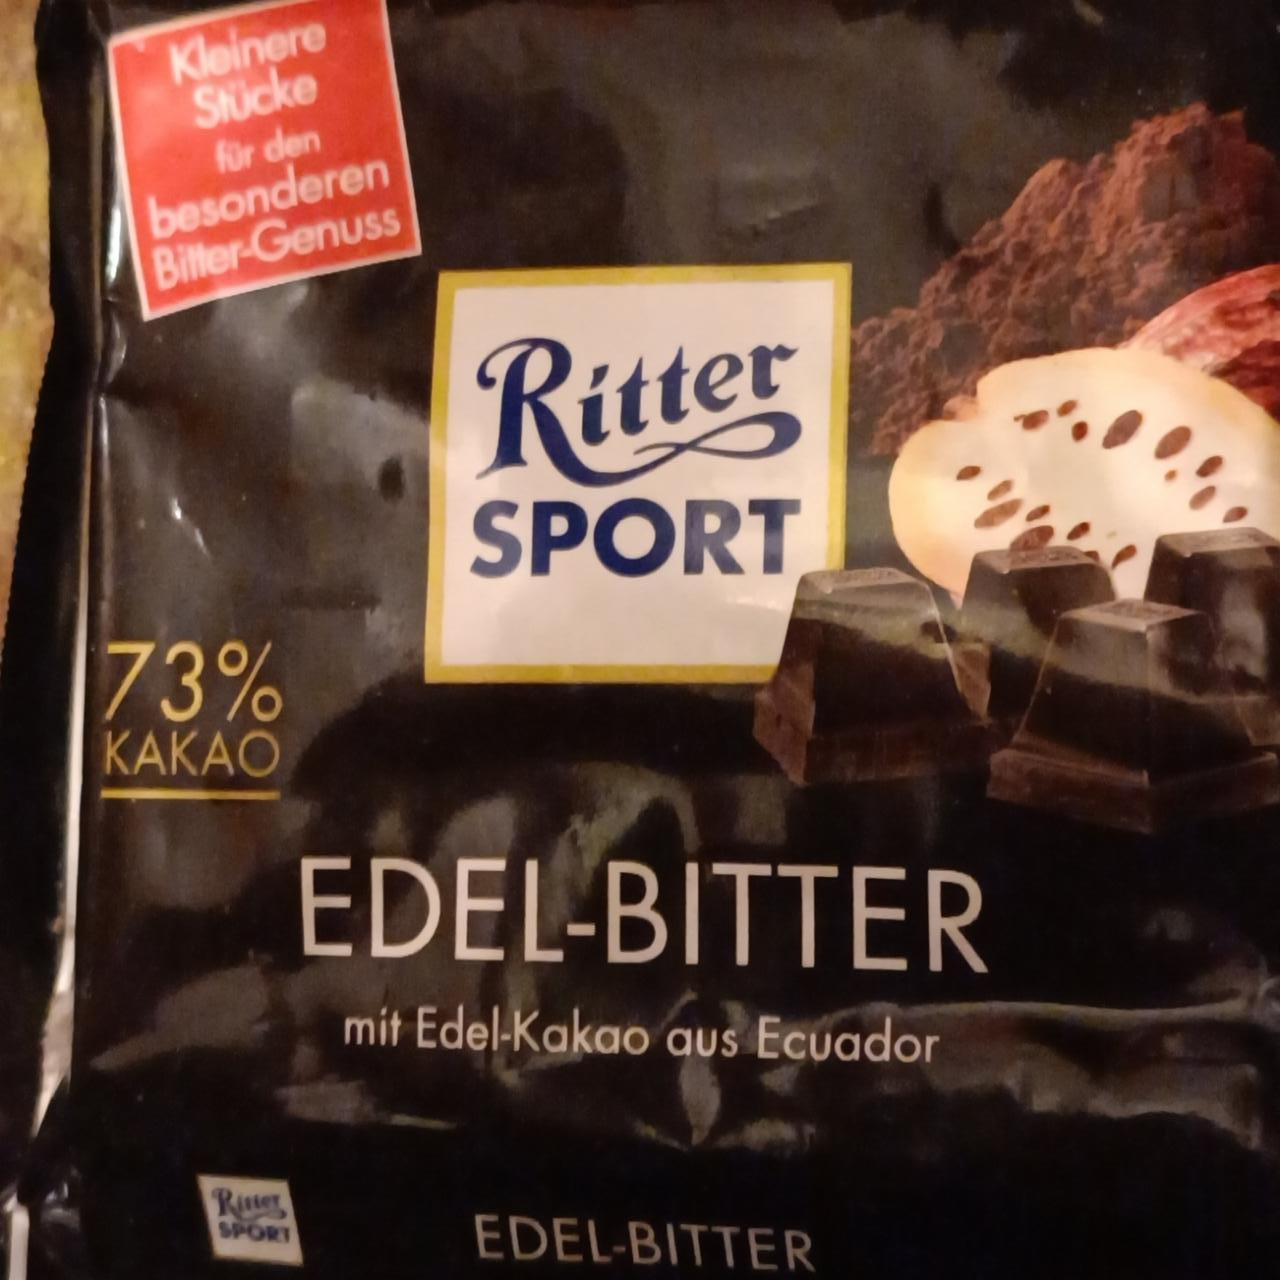 Fotografie - Edel-Bitter 73% kakao Ritter Sport